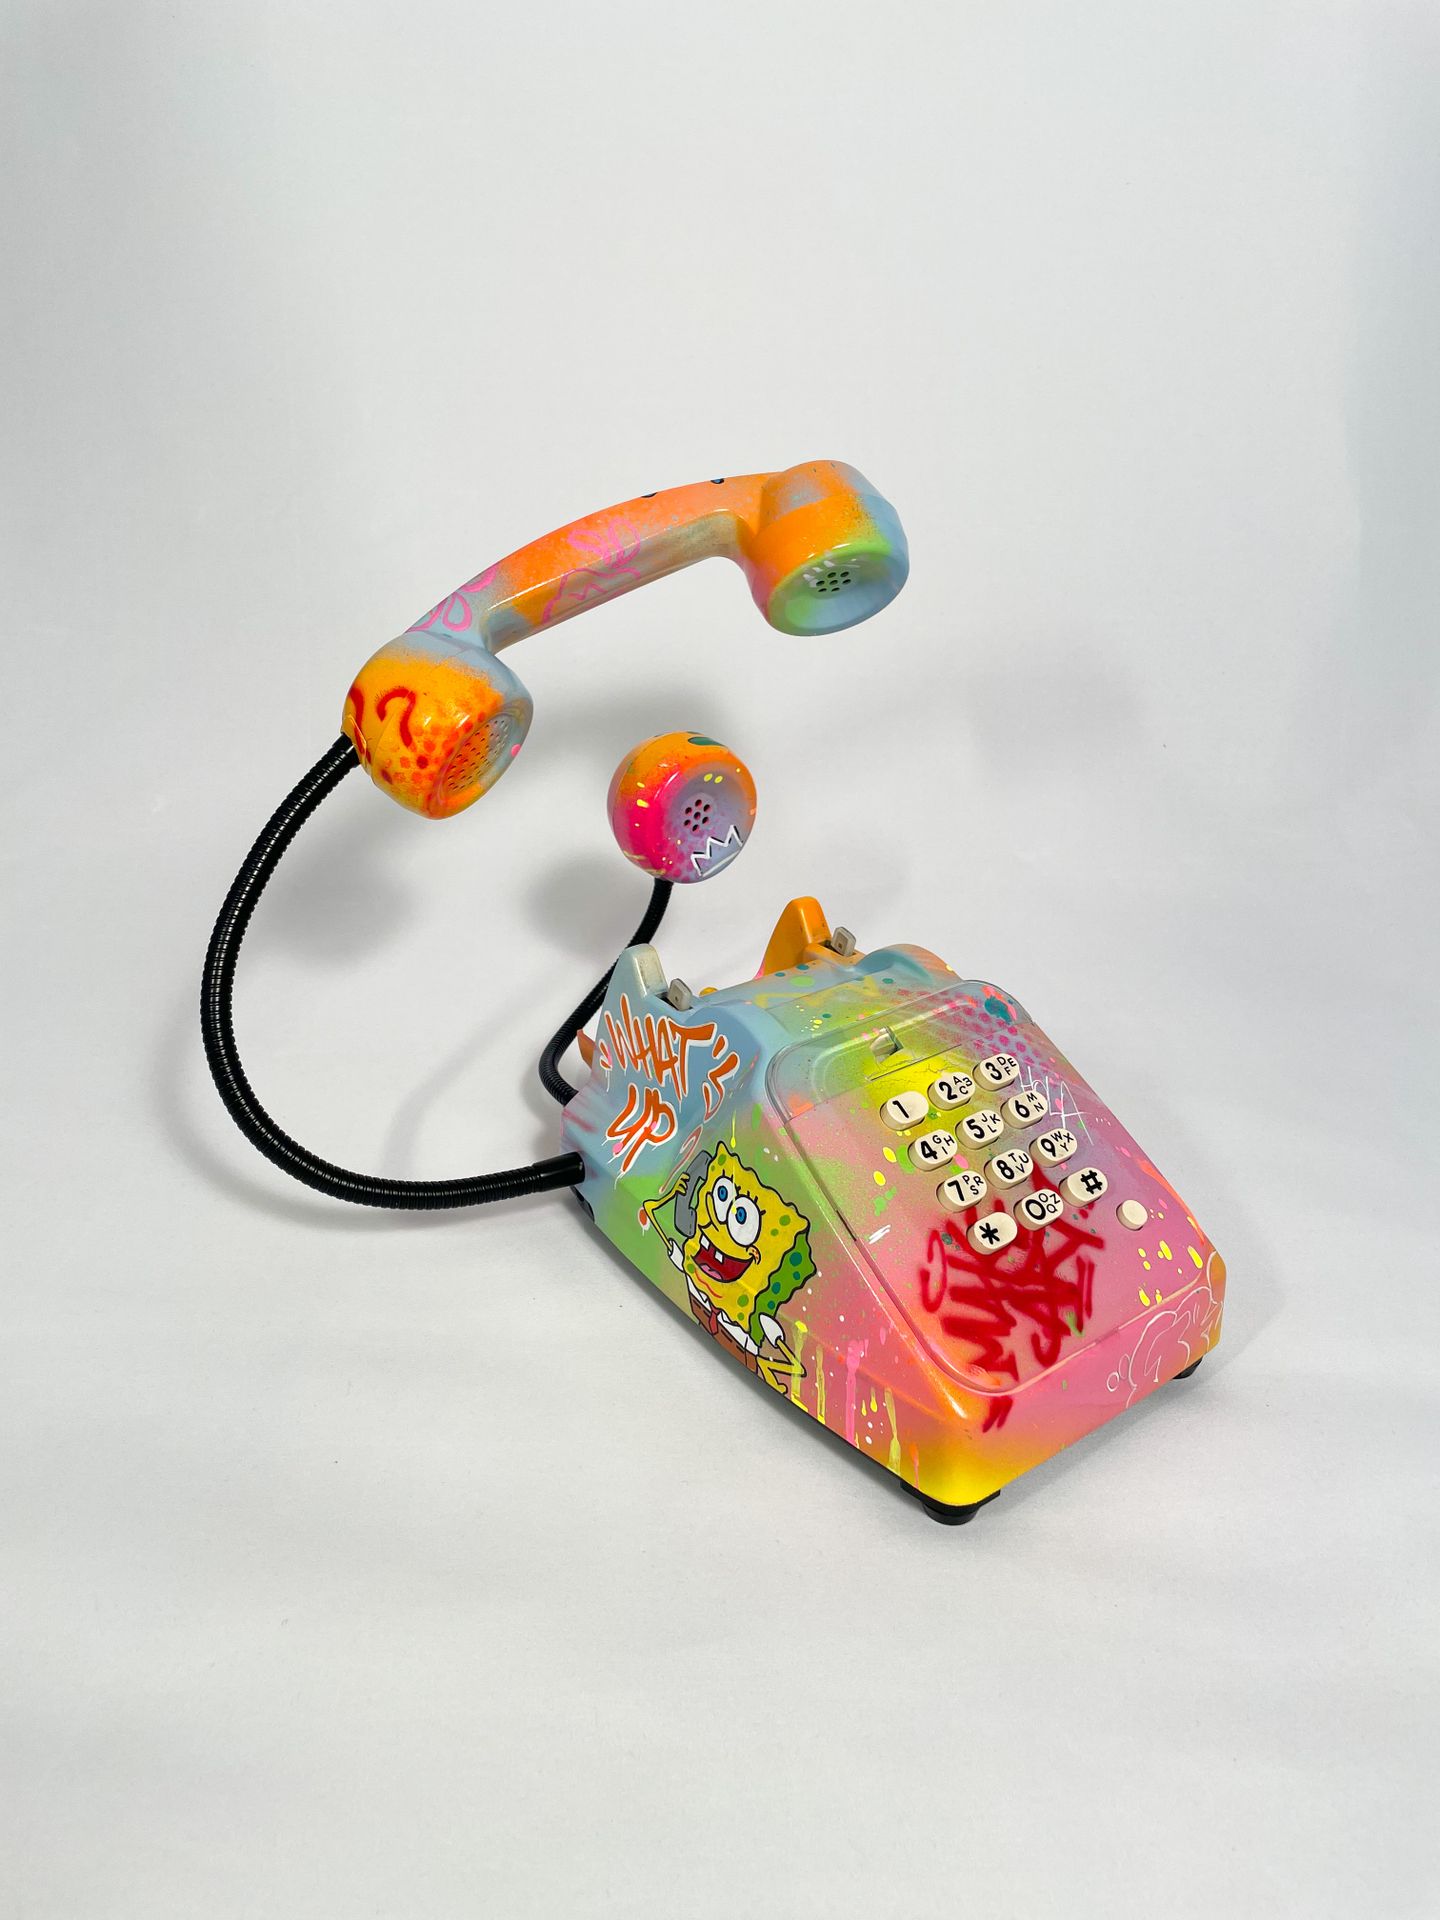 ANTHONY GRIP Teléfono Bob -

Técnica mixta sobre teléfono: 

Acrílico, aerosol

&hellip;